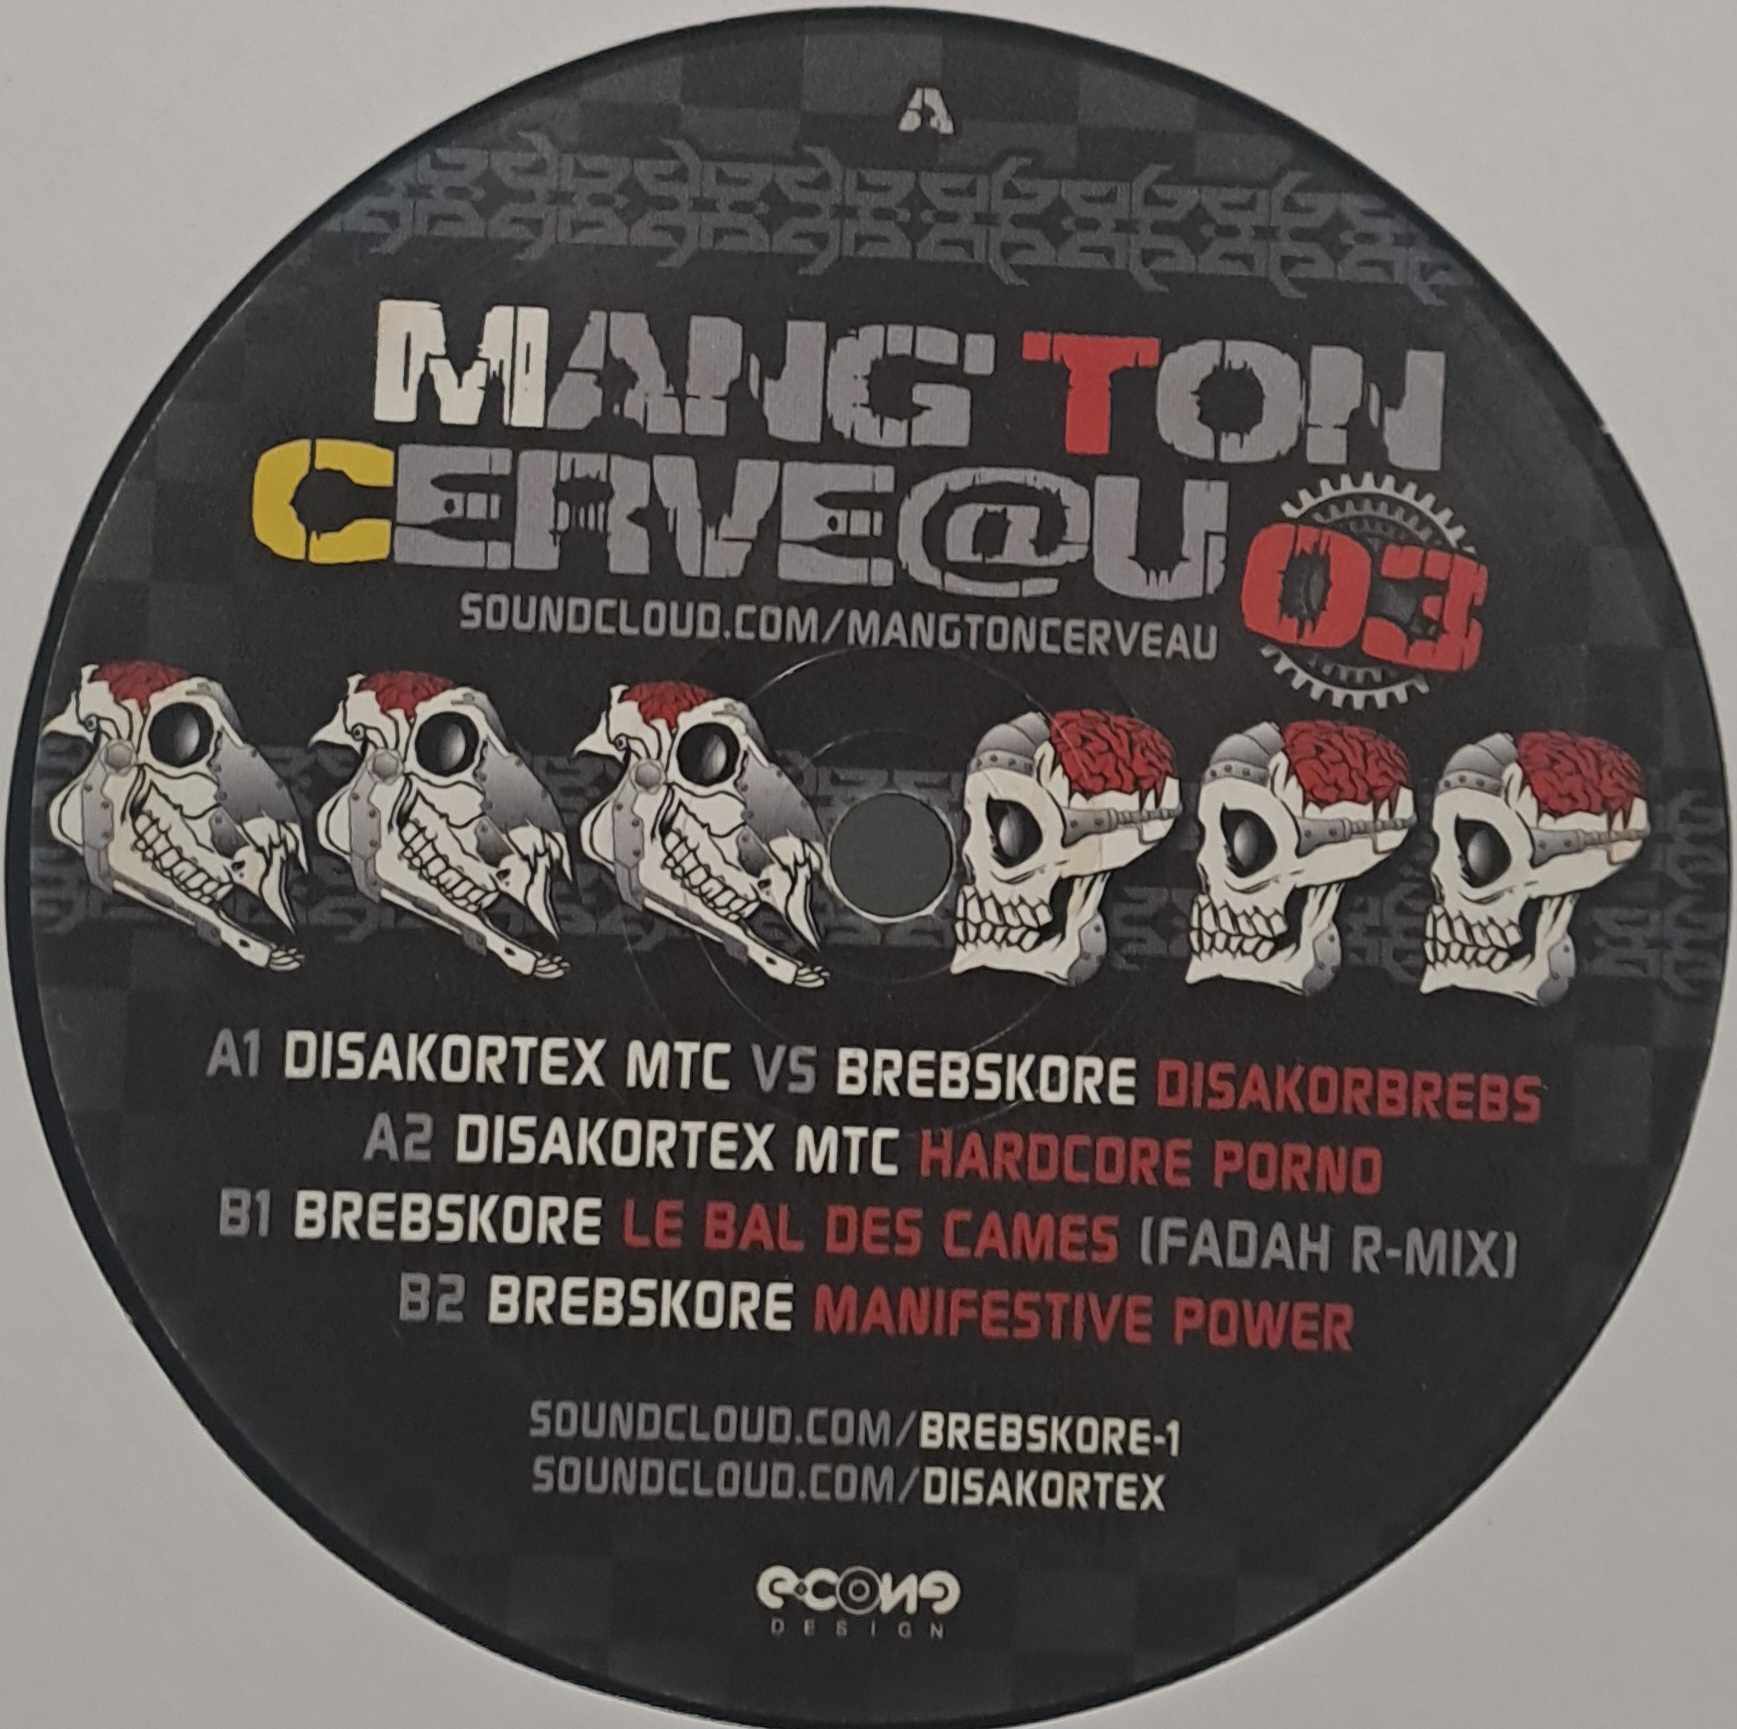 Mang'ton Cerveau 03 - vinyle freetekno